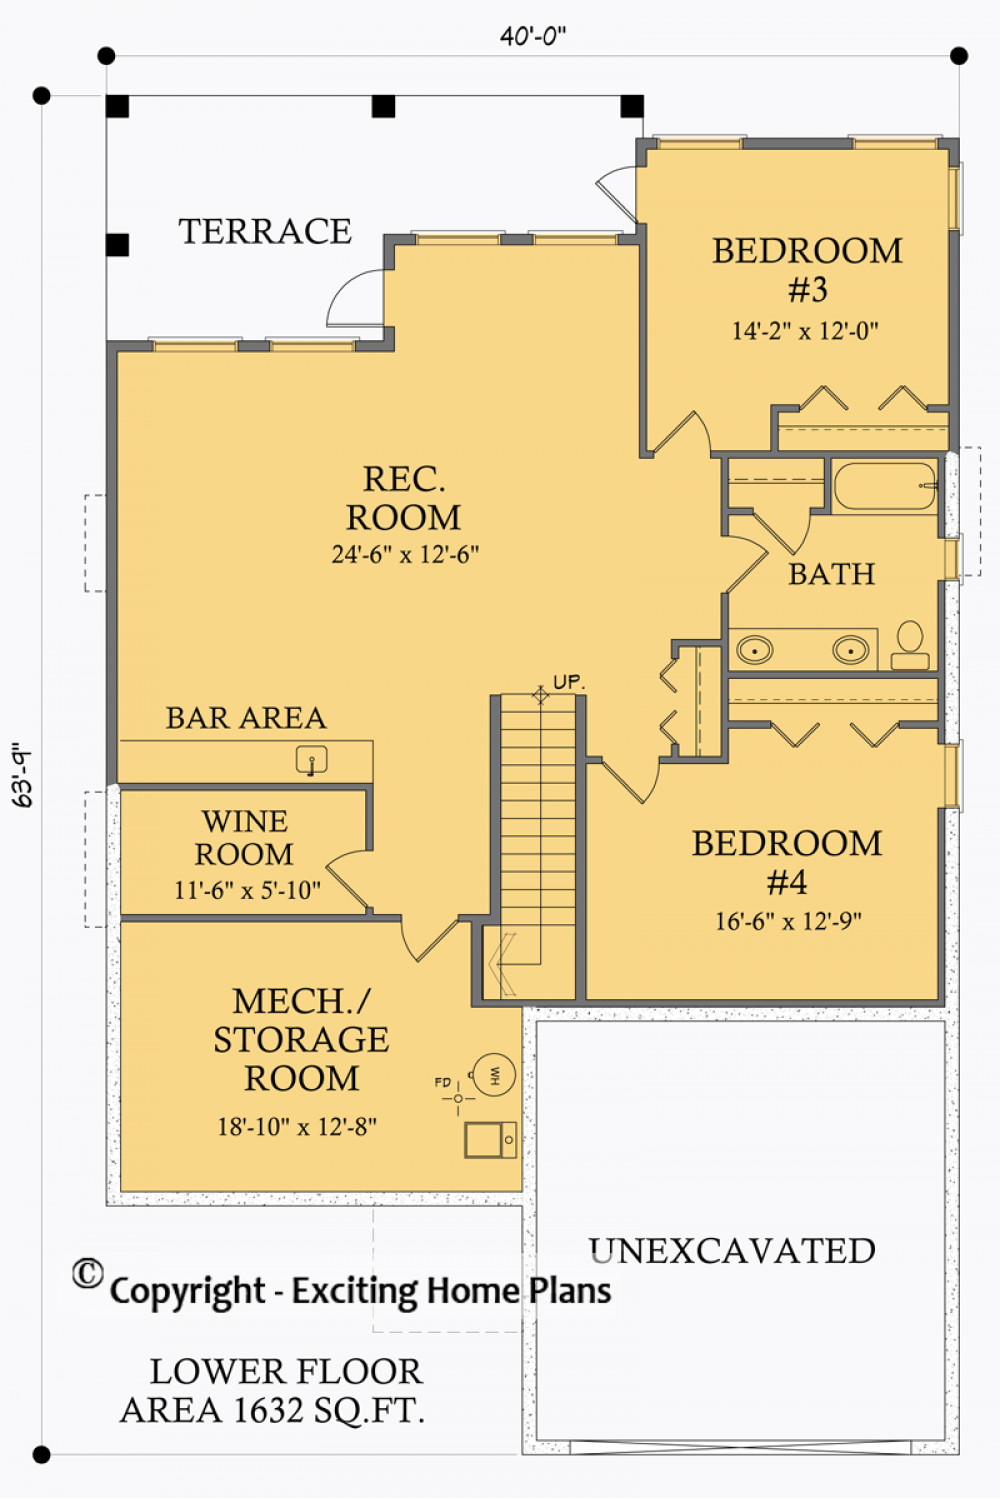 House Plan E1005-10 Lower Floor Plan